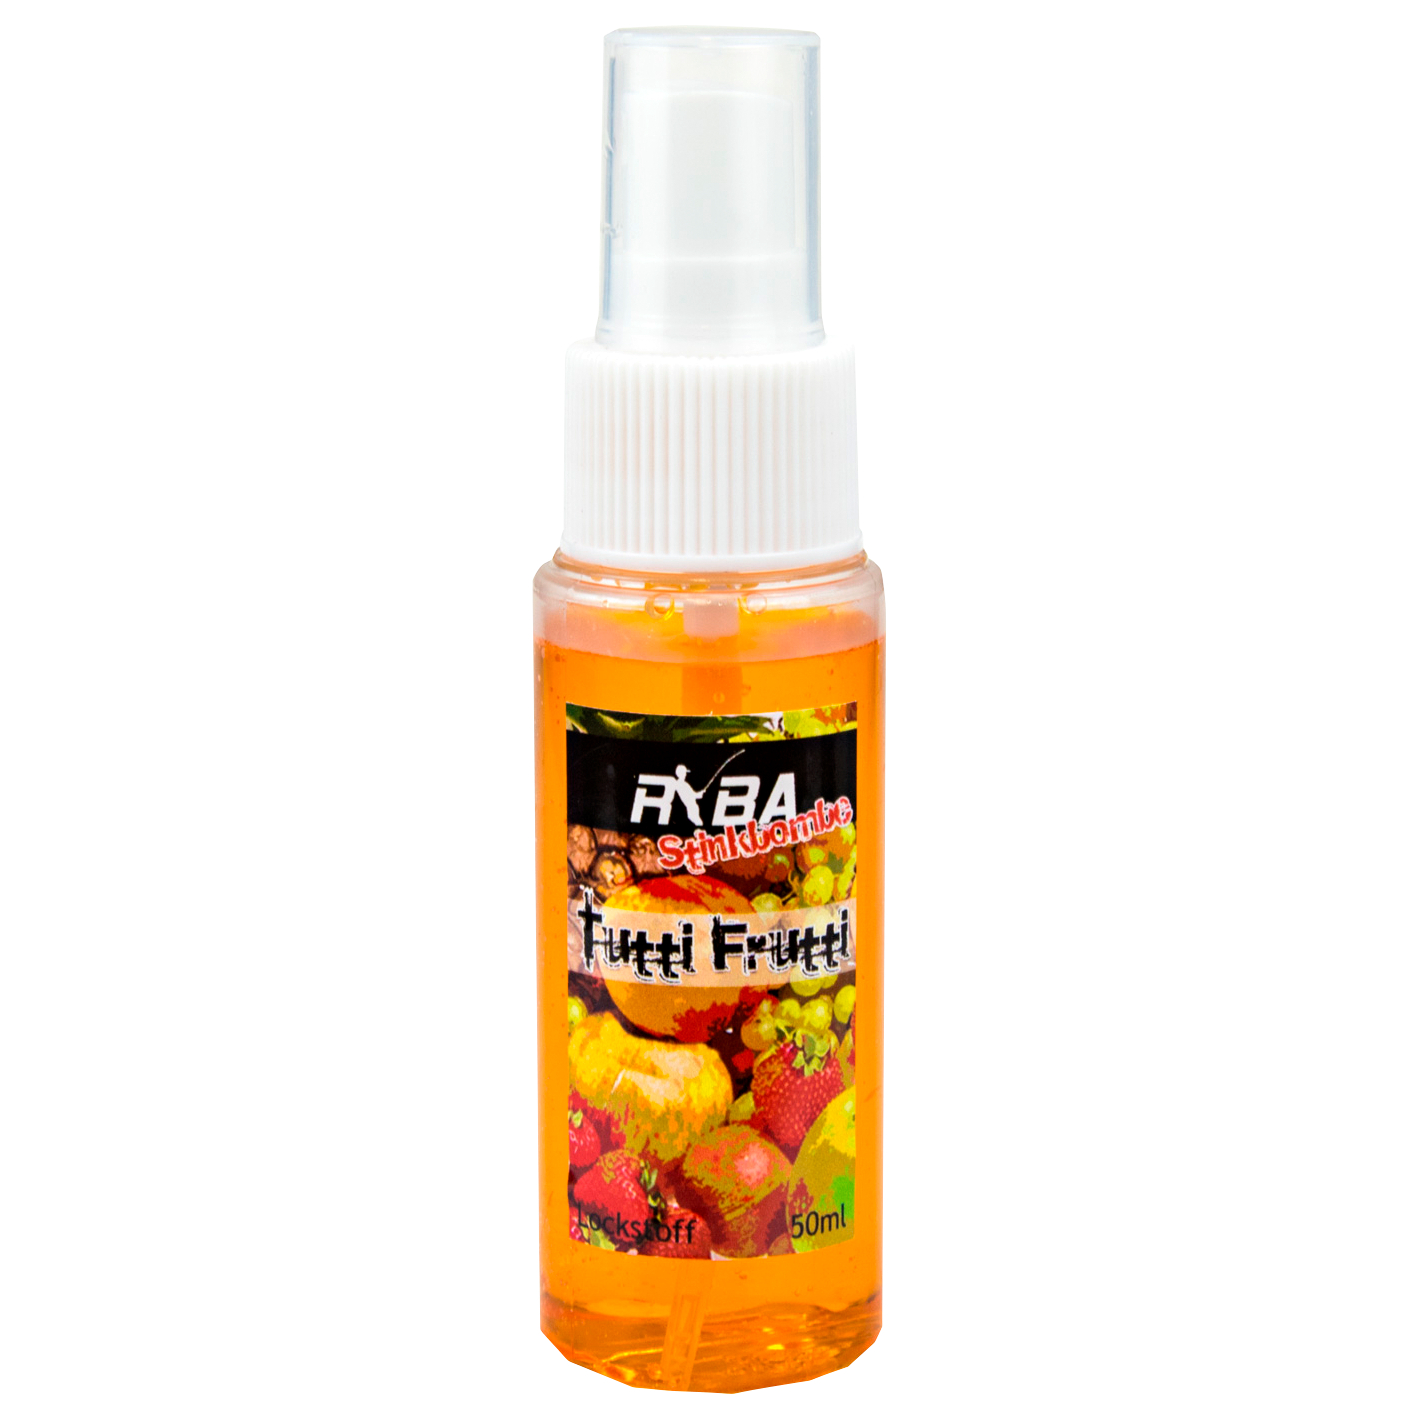 Ryba Attractant Spray Stink Bomb (Tutti Frutti) 